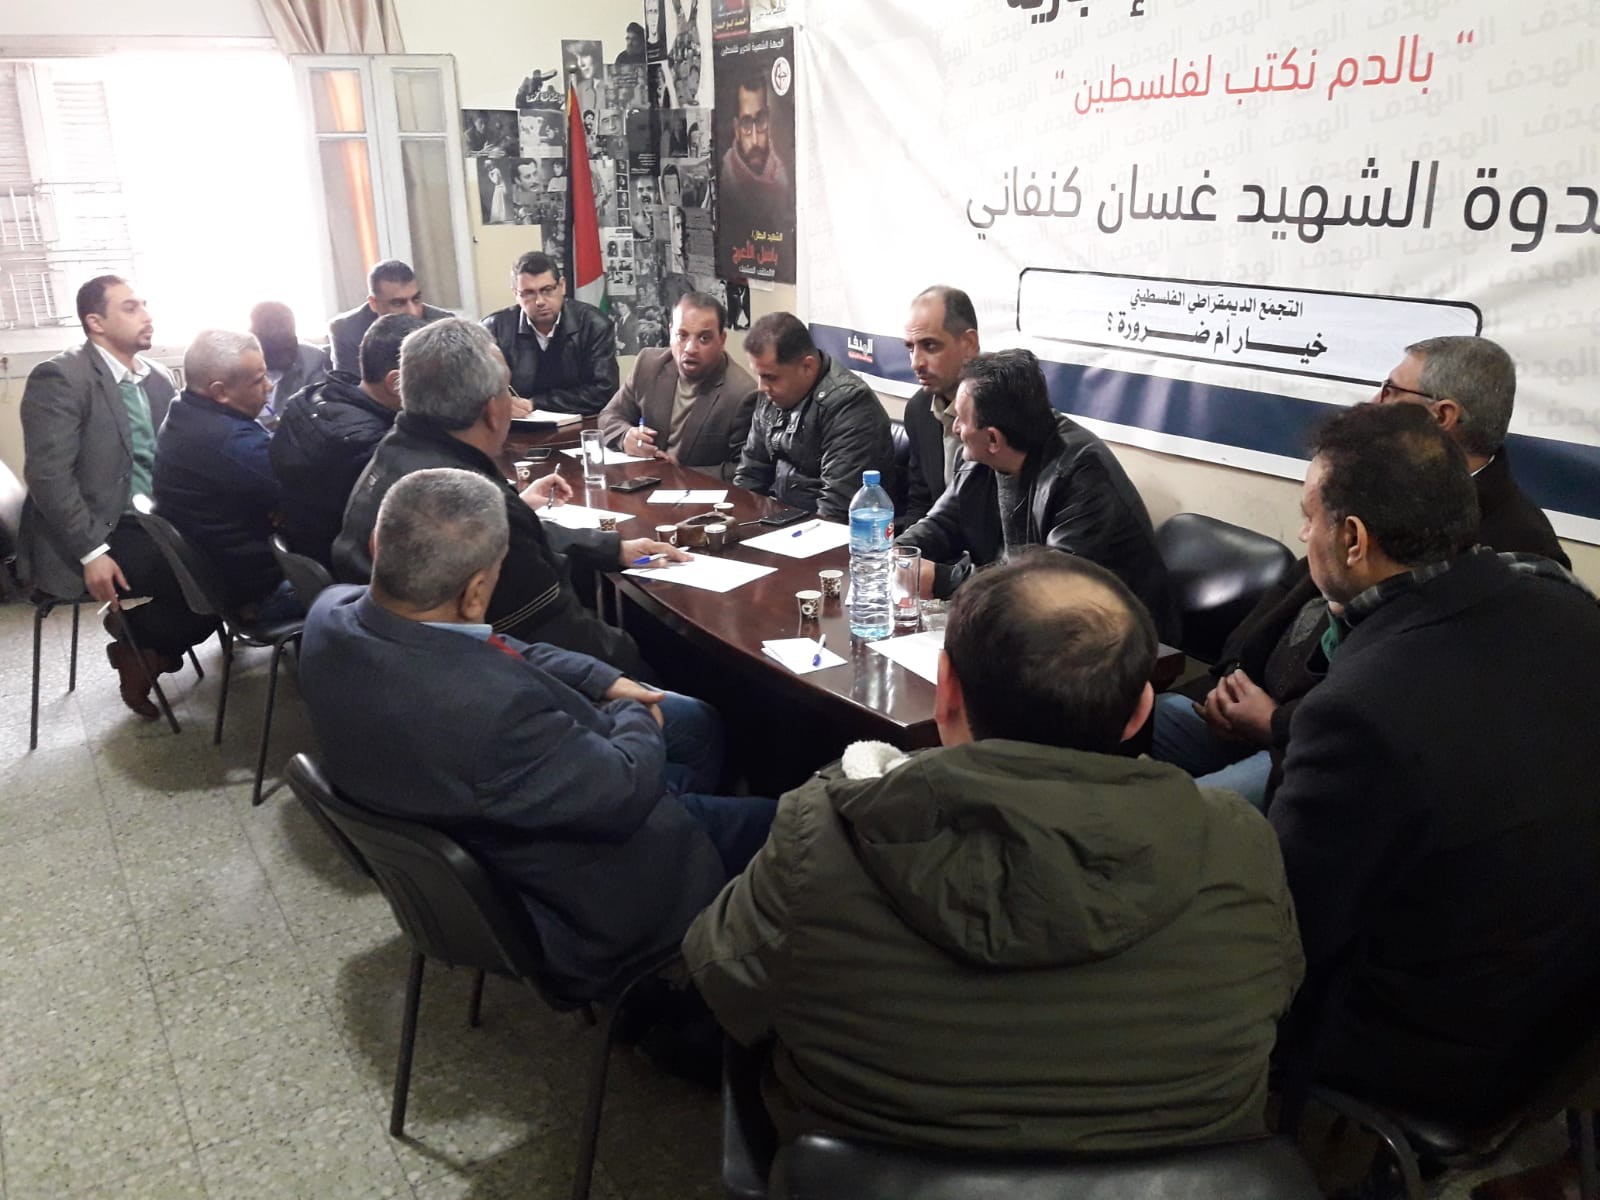 بيت الصحافة يشارك بالاجتماع الطارئ للمؤسسات والكتل الصحفية